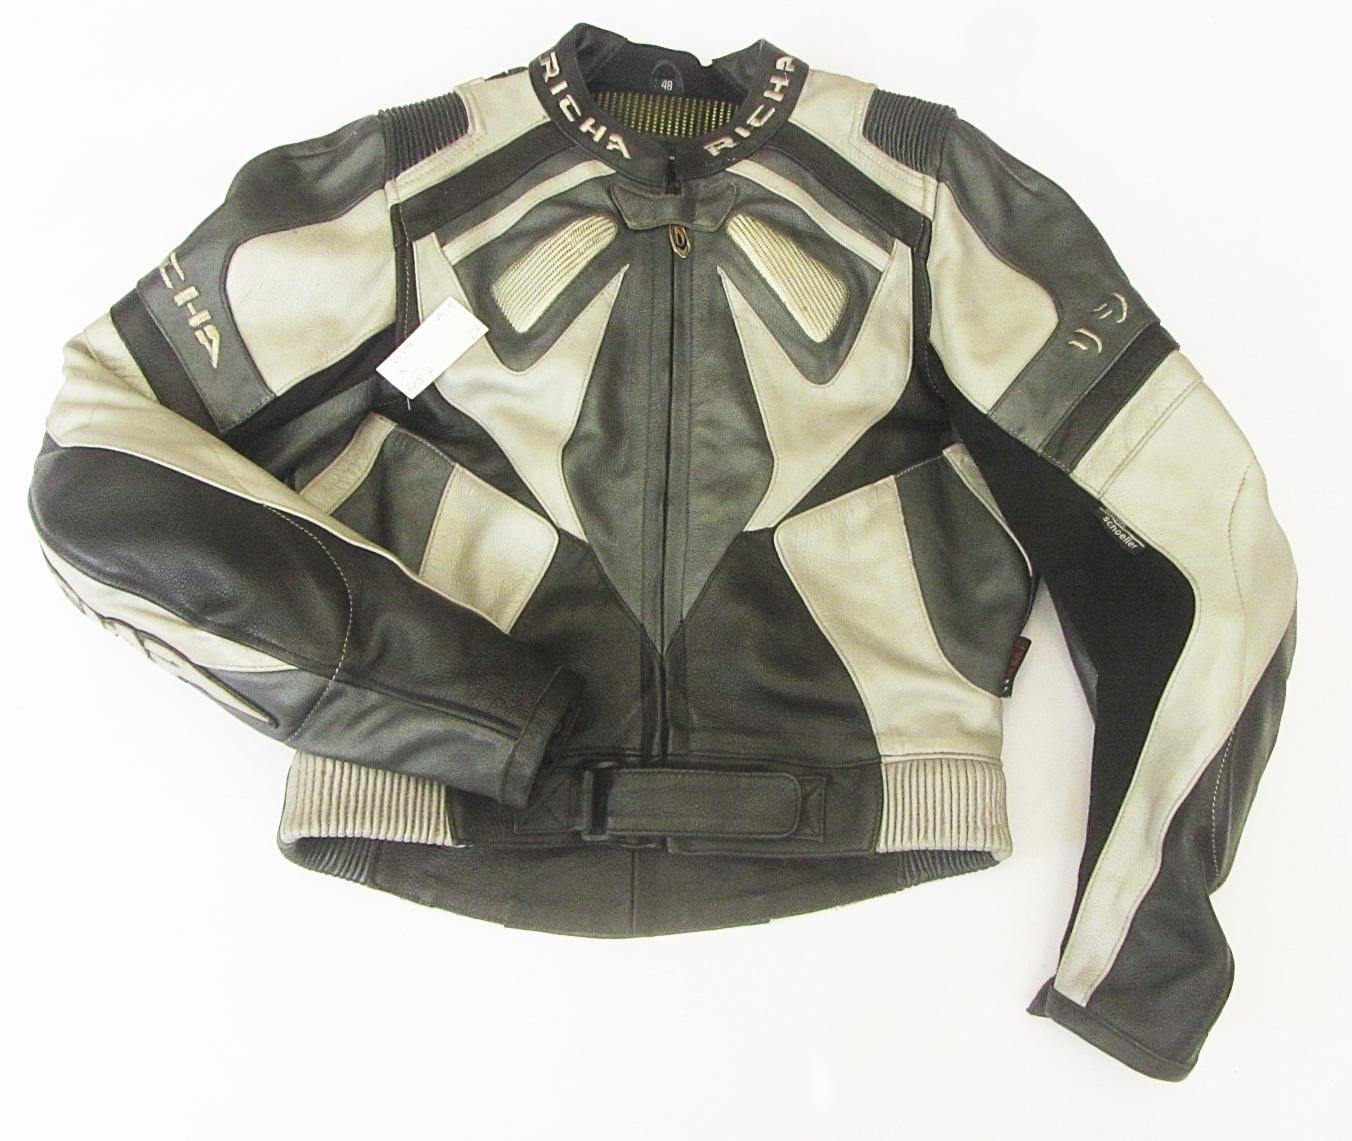 Kožená bunda RICHA- vel. S/48 - Náhradní díly a příslušenství pro motocykly